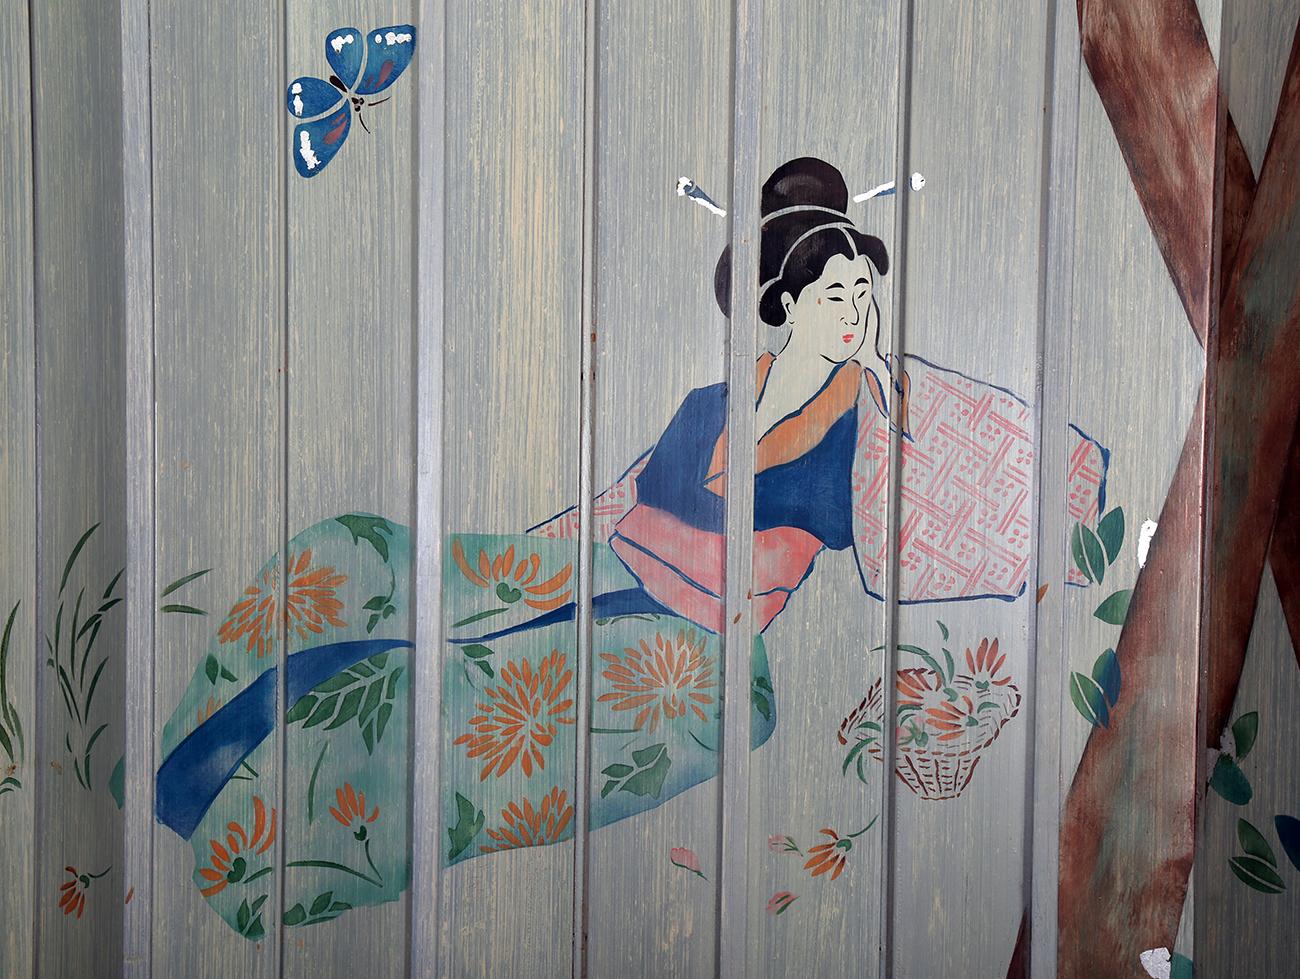 Ce grand paravent d'art décoratif peint à la main sur le thème de l'orientalisme mesure plus d'un mètre cinquante de long. Il est signé et daté de 1991 par la femme artiste américano-hollandaise Liedeke Bulder. Deux tableaux distincts émergent de